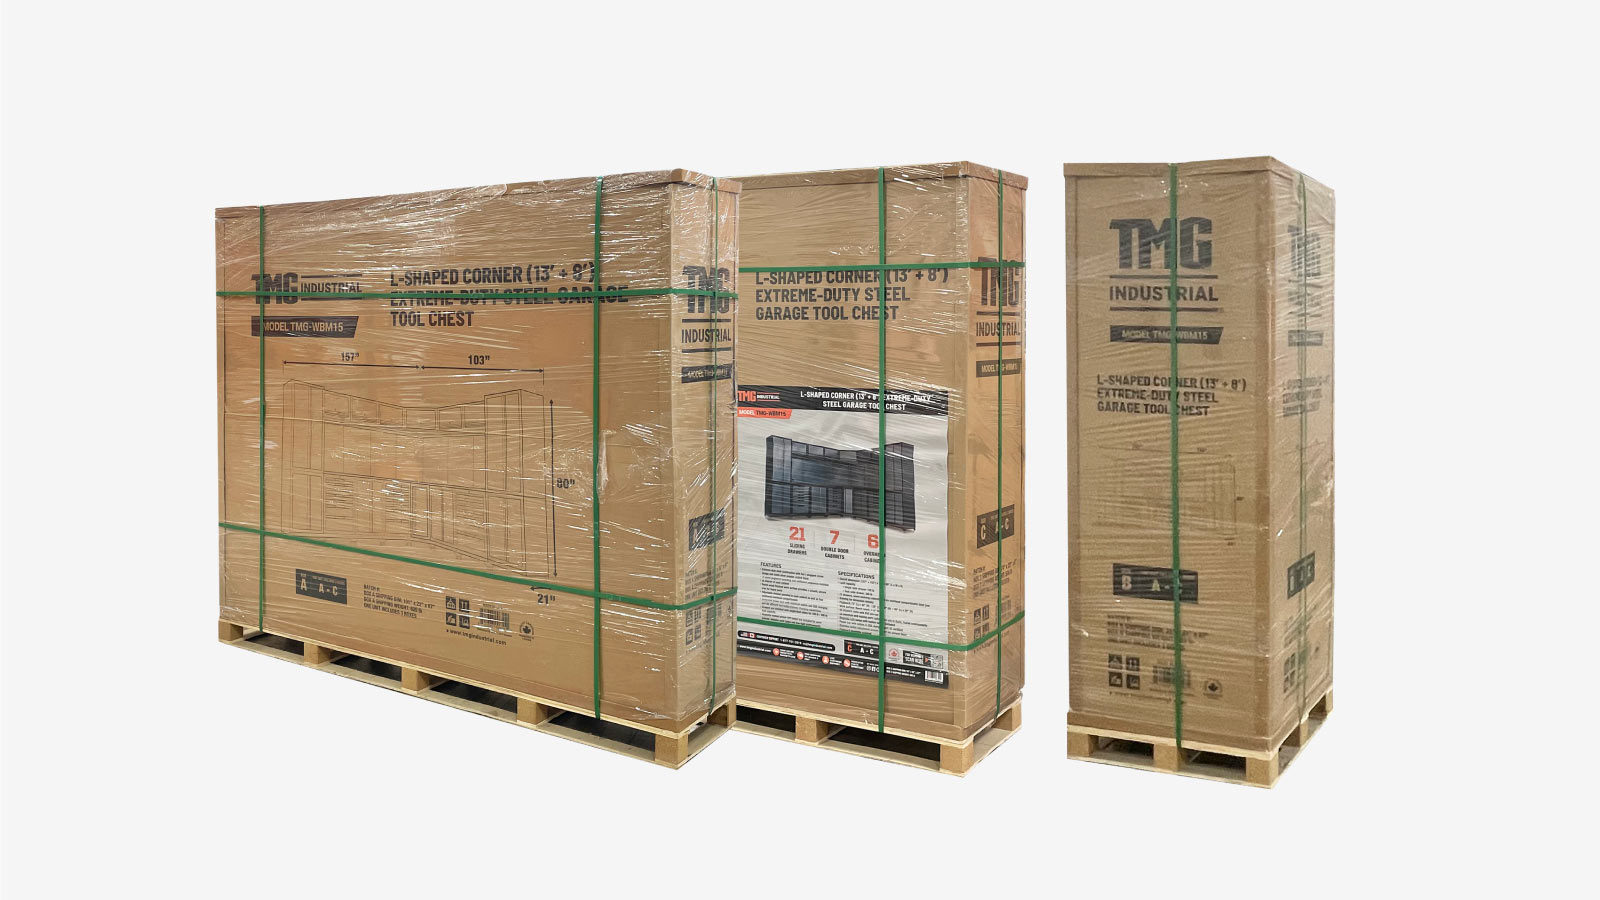 TMG Industrial Extreme-Duty Steel Garage Corner (11' + 8.5') Coffre à outils avec panneau perforé, prises de courant, port USB, lampes à DEL à mouvement magnétique, TMG-WBM15-shipping-info-image